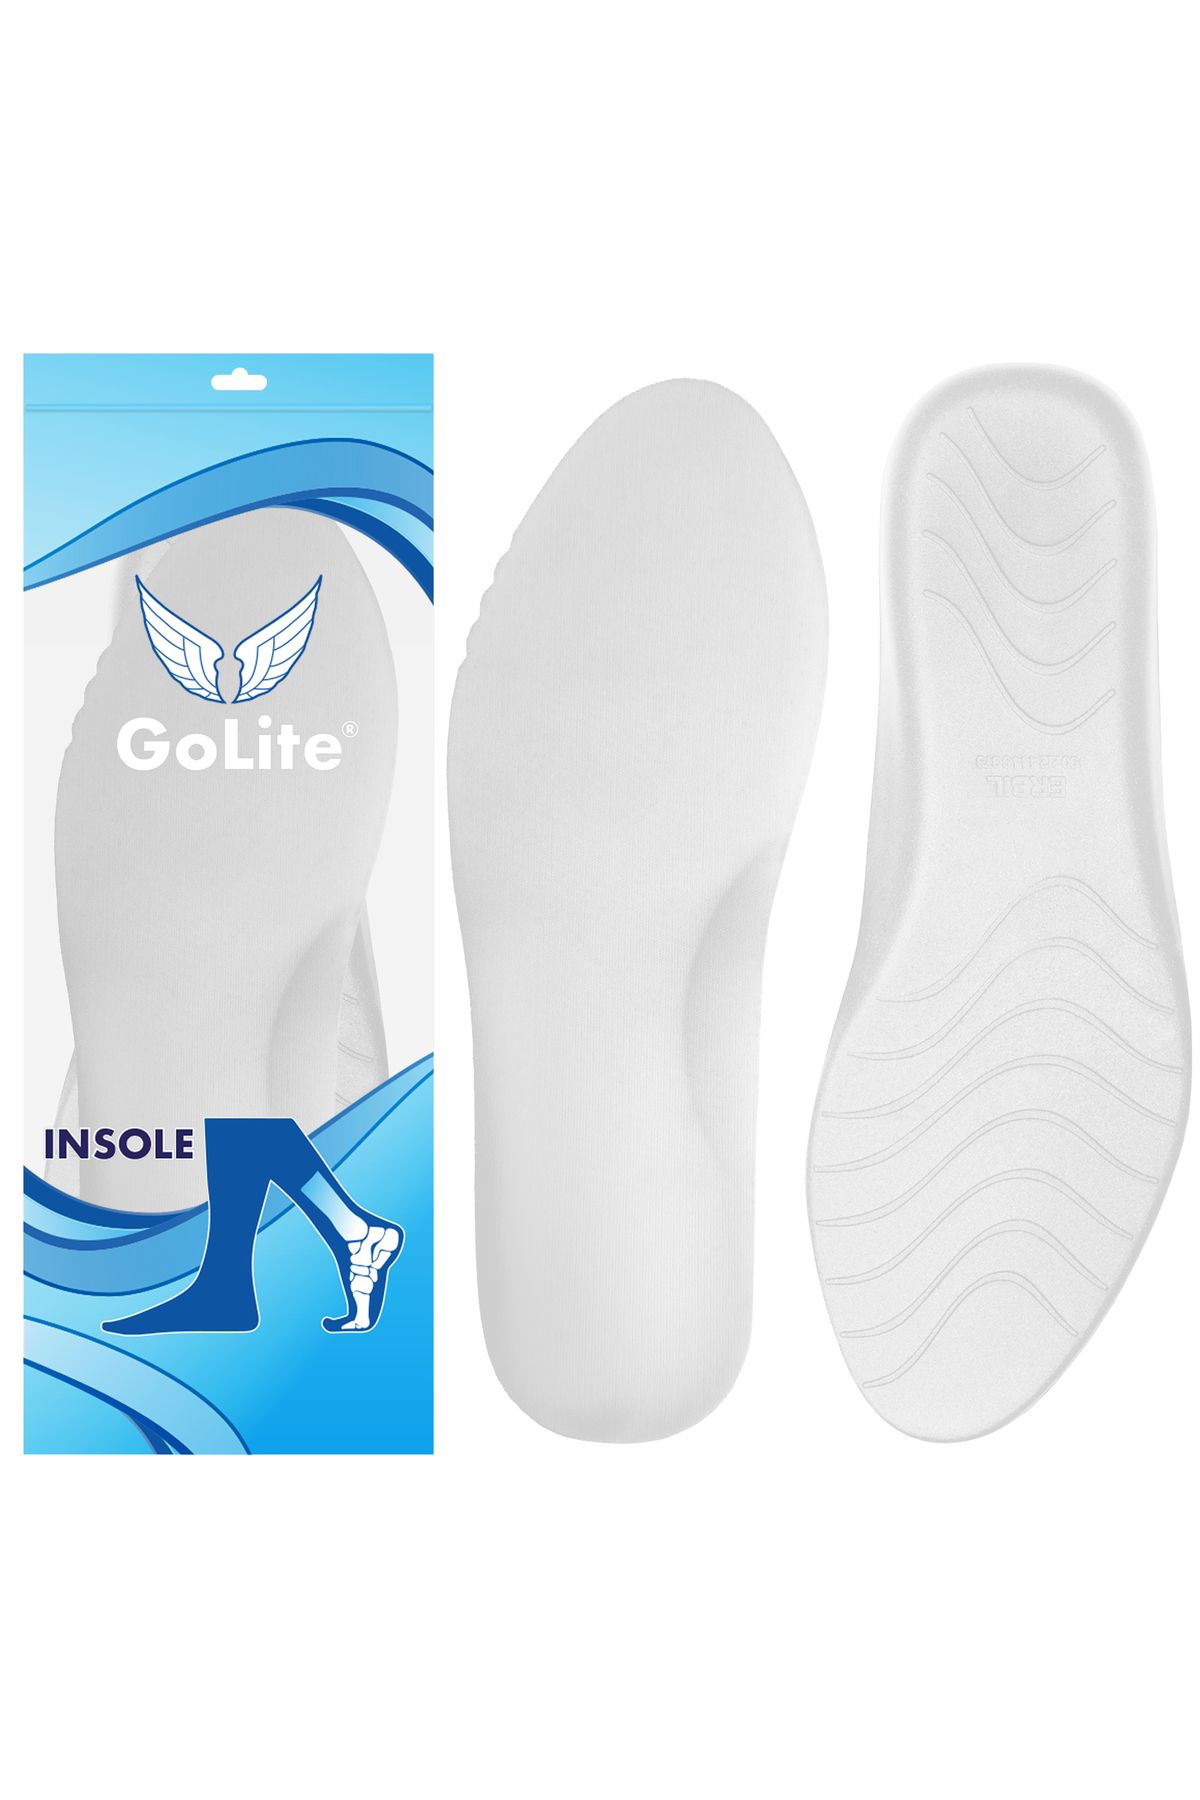 GoLite Ortopedik Tabanlık Extra Konfor Ayakkabı Tabanlığı, Memory Foam Hafızalı Ayakkabı Tabanı - M24 Beyaz